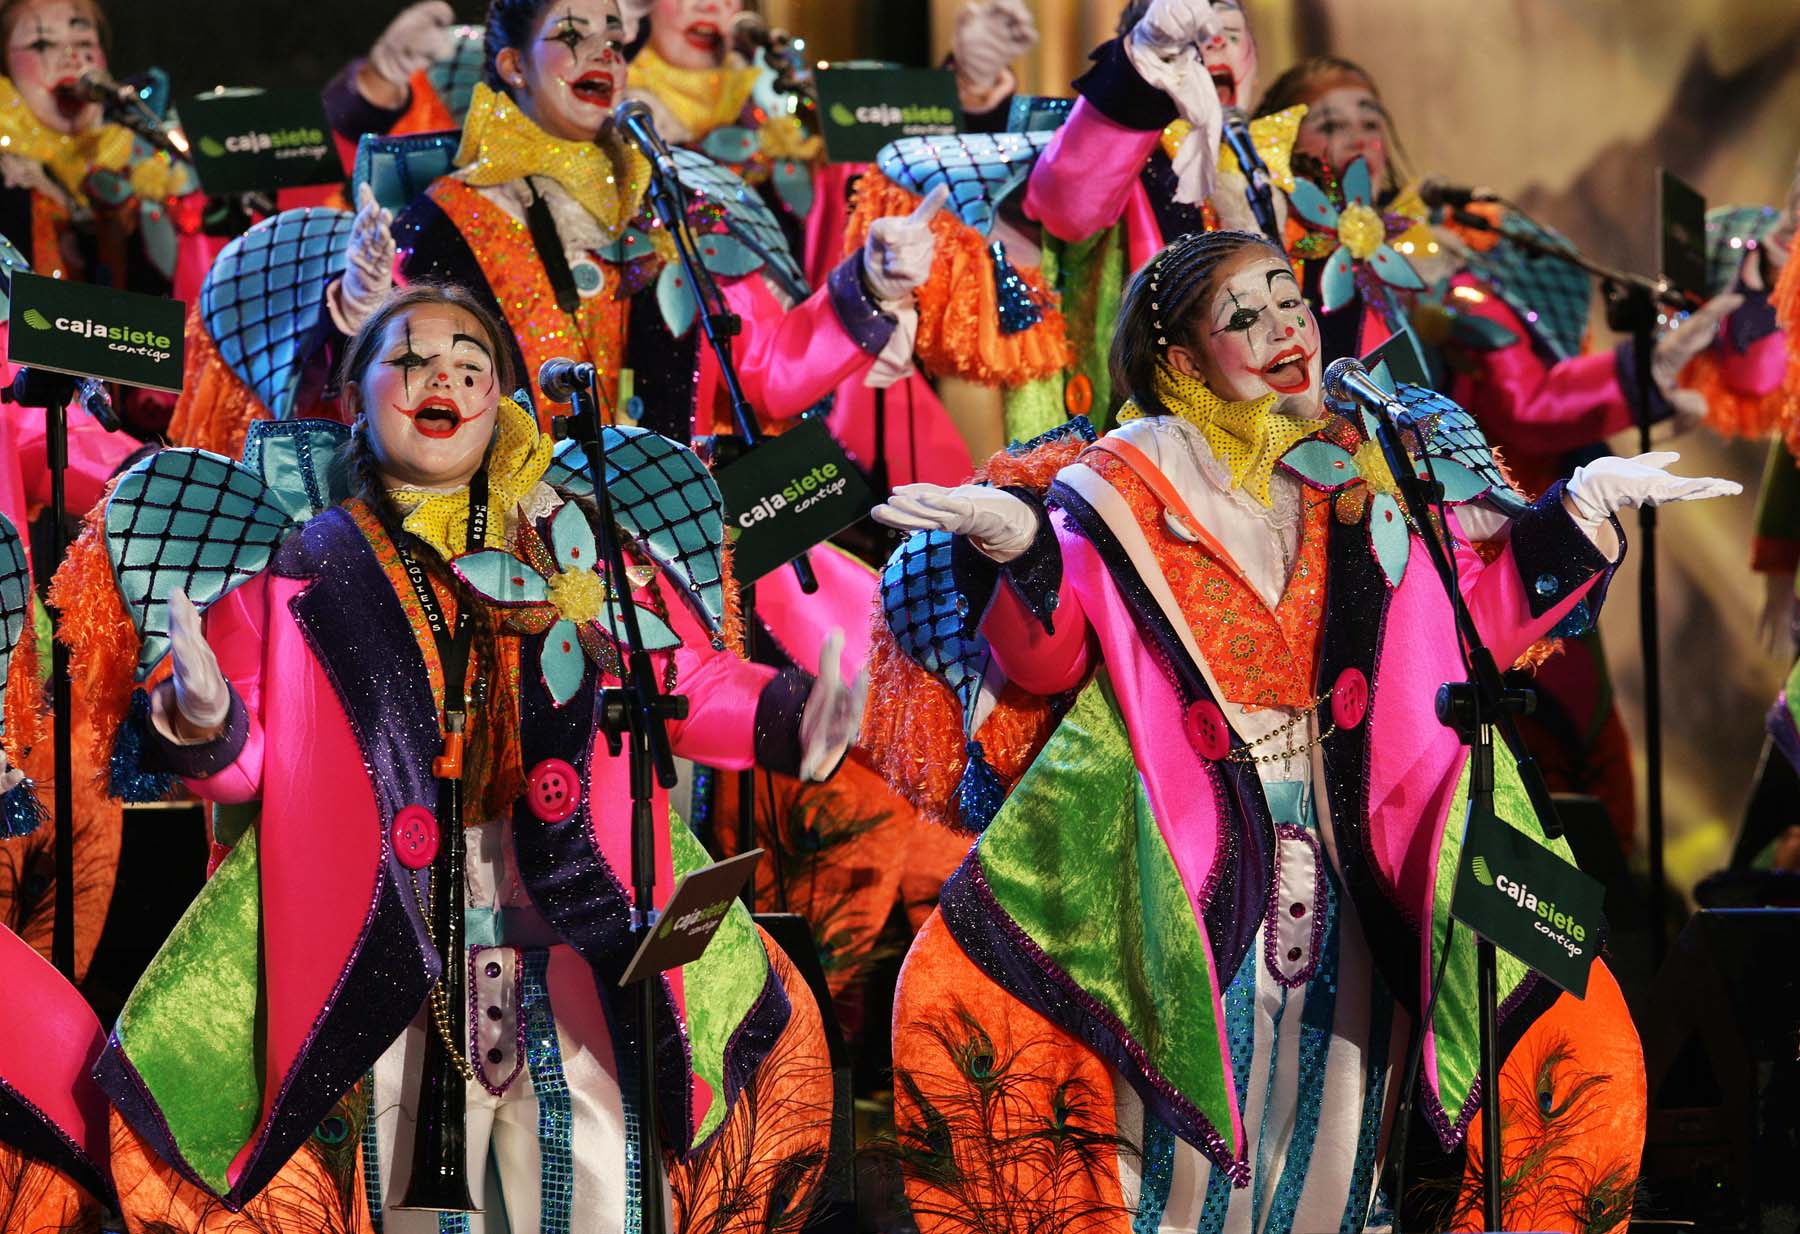 La murga infantil "Los desinquietos" durante un concurso carnavalero.